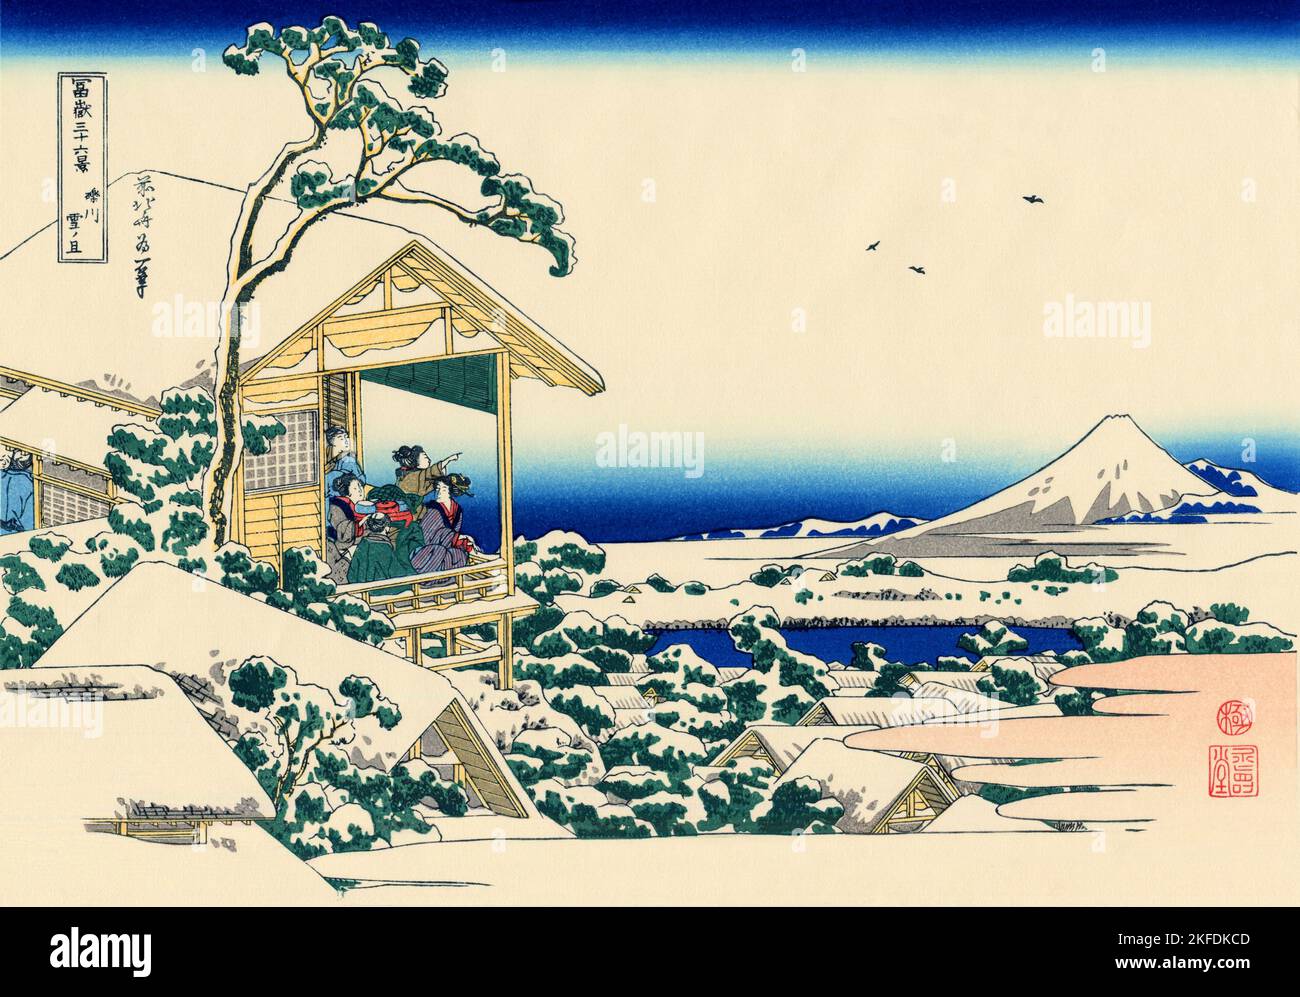 Japon: «Koishikawa le matin après une chute de neige».Imprimé Ukiyo-e en blocs de bois de la série «trente-six vues du Mont Fuji» de Katsushika Hokusai (31 octobre 1760 - 10 mai 1849), 1830.«trente-six vues du Mont Fuji» est une série «ukiyo-e» de gravures sur bois de l’artiste japonais Katsushika Hokusai.La série représente le Mont Fuji dans différentes saisons et conditions météorologiques à partir de divers endroits et distances.Il se compose en fait de 46 tirages créés entre 1826 et 1833.Les 36 premiers ont été inclus dans la publication originale et, en raison de leur popularité, 10 autres ont été ajoutés. Banque D'Images